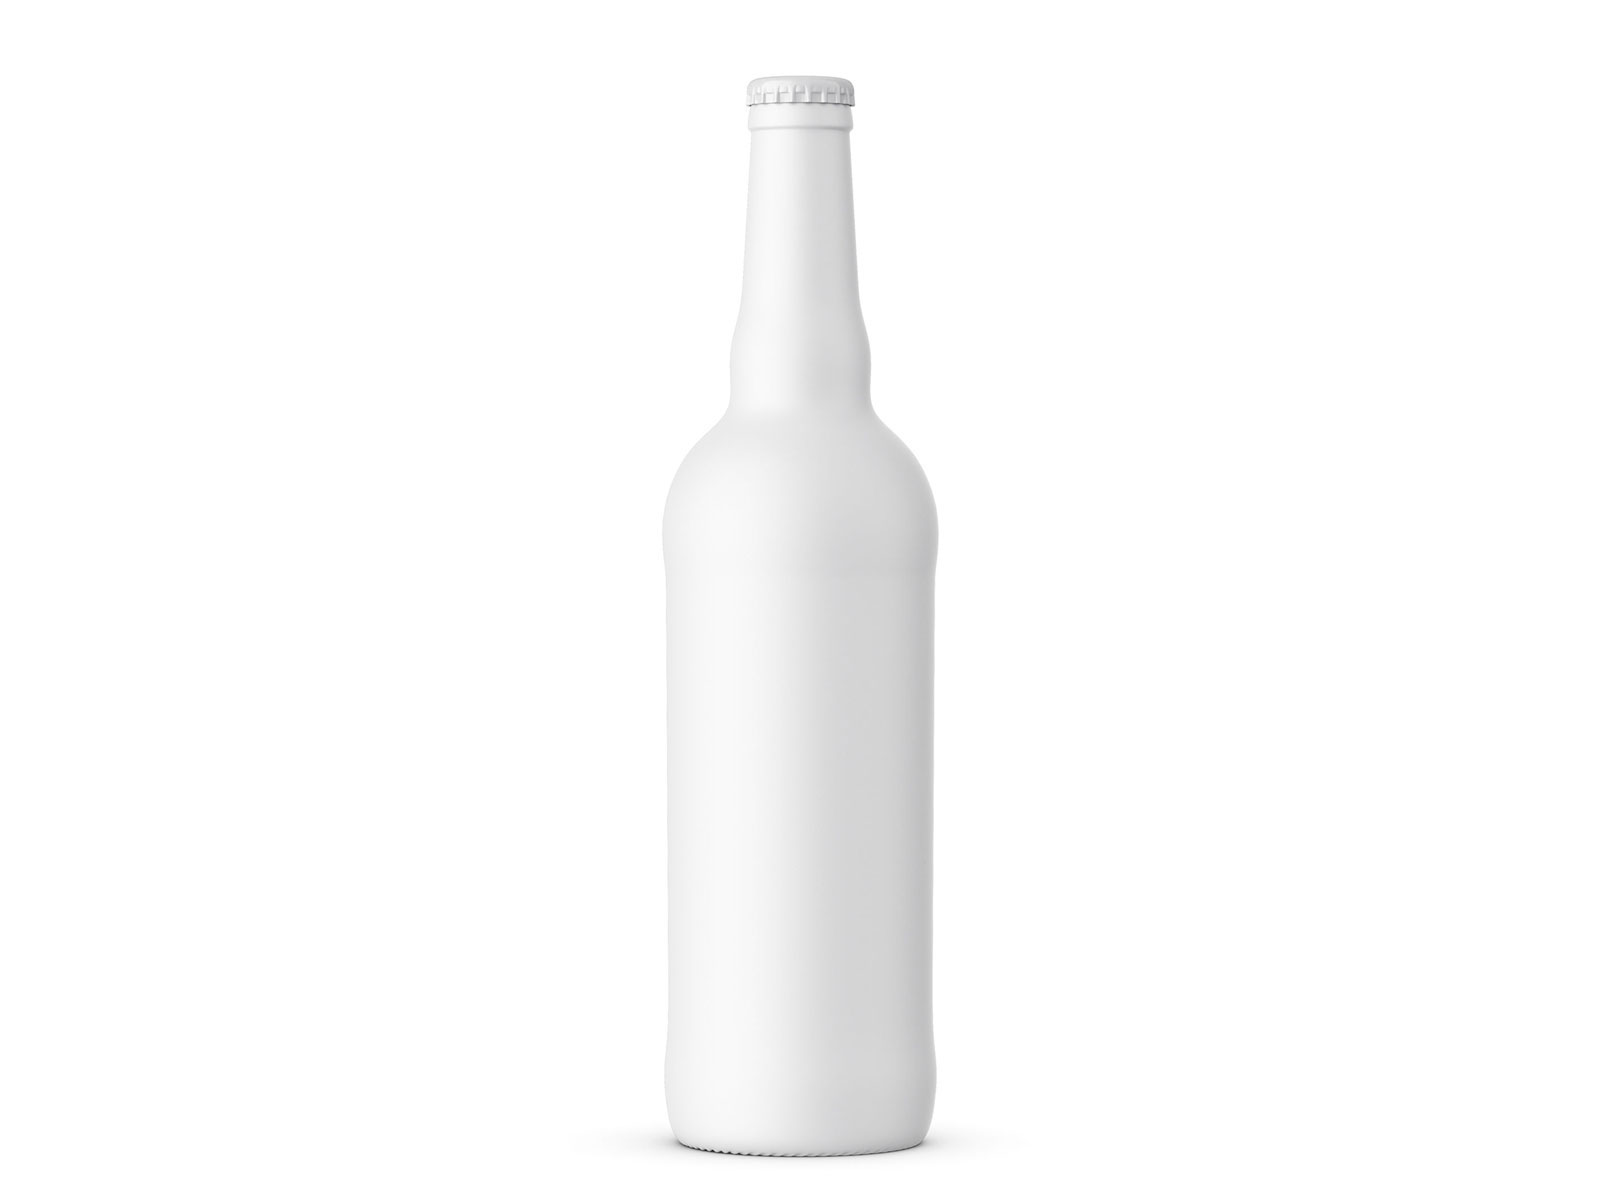 高级精致酒瓶包装设计贴图模板PSD样机模型Beer Bottle Mockup